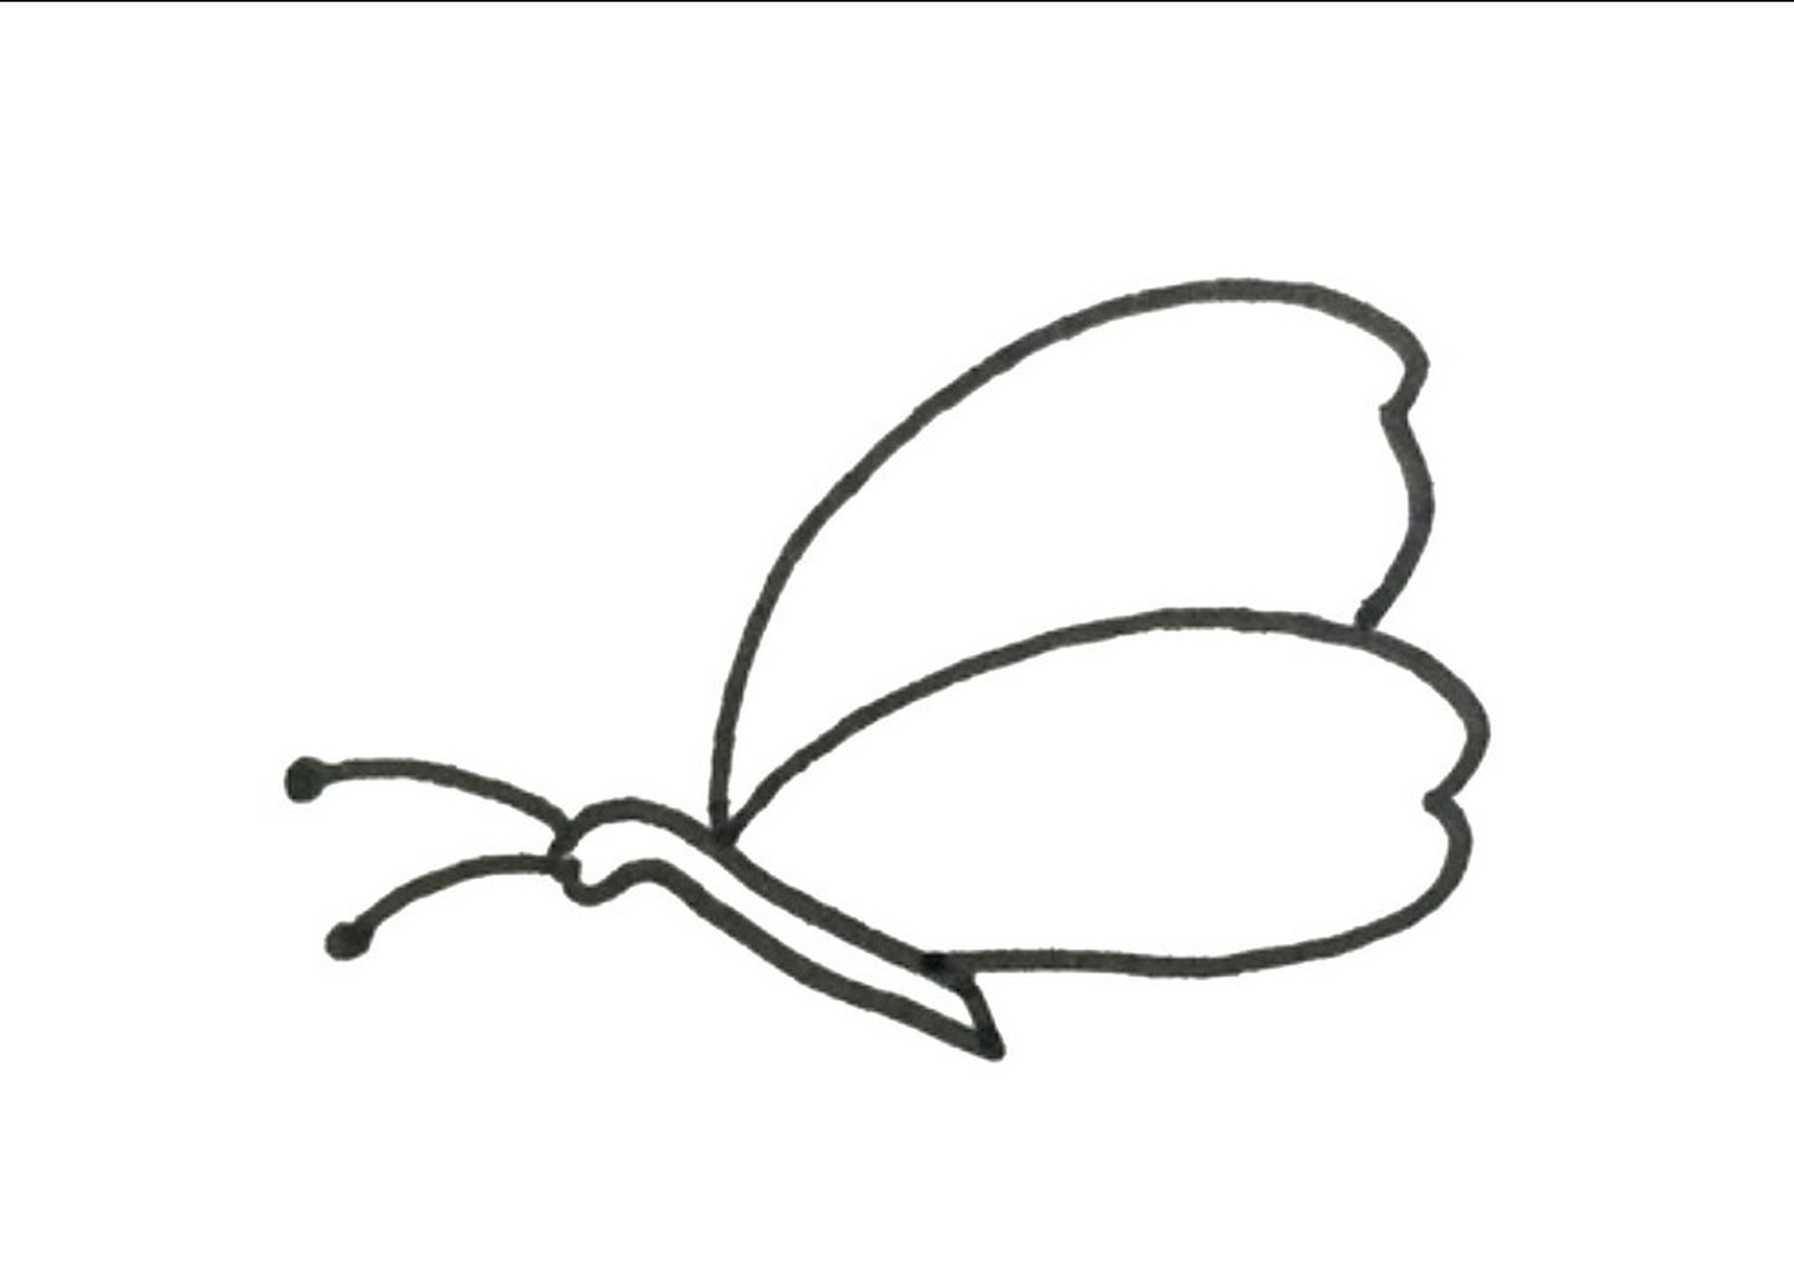 蝴蝶飞翔的简笔画图片